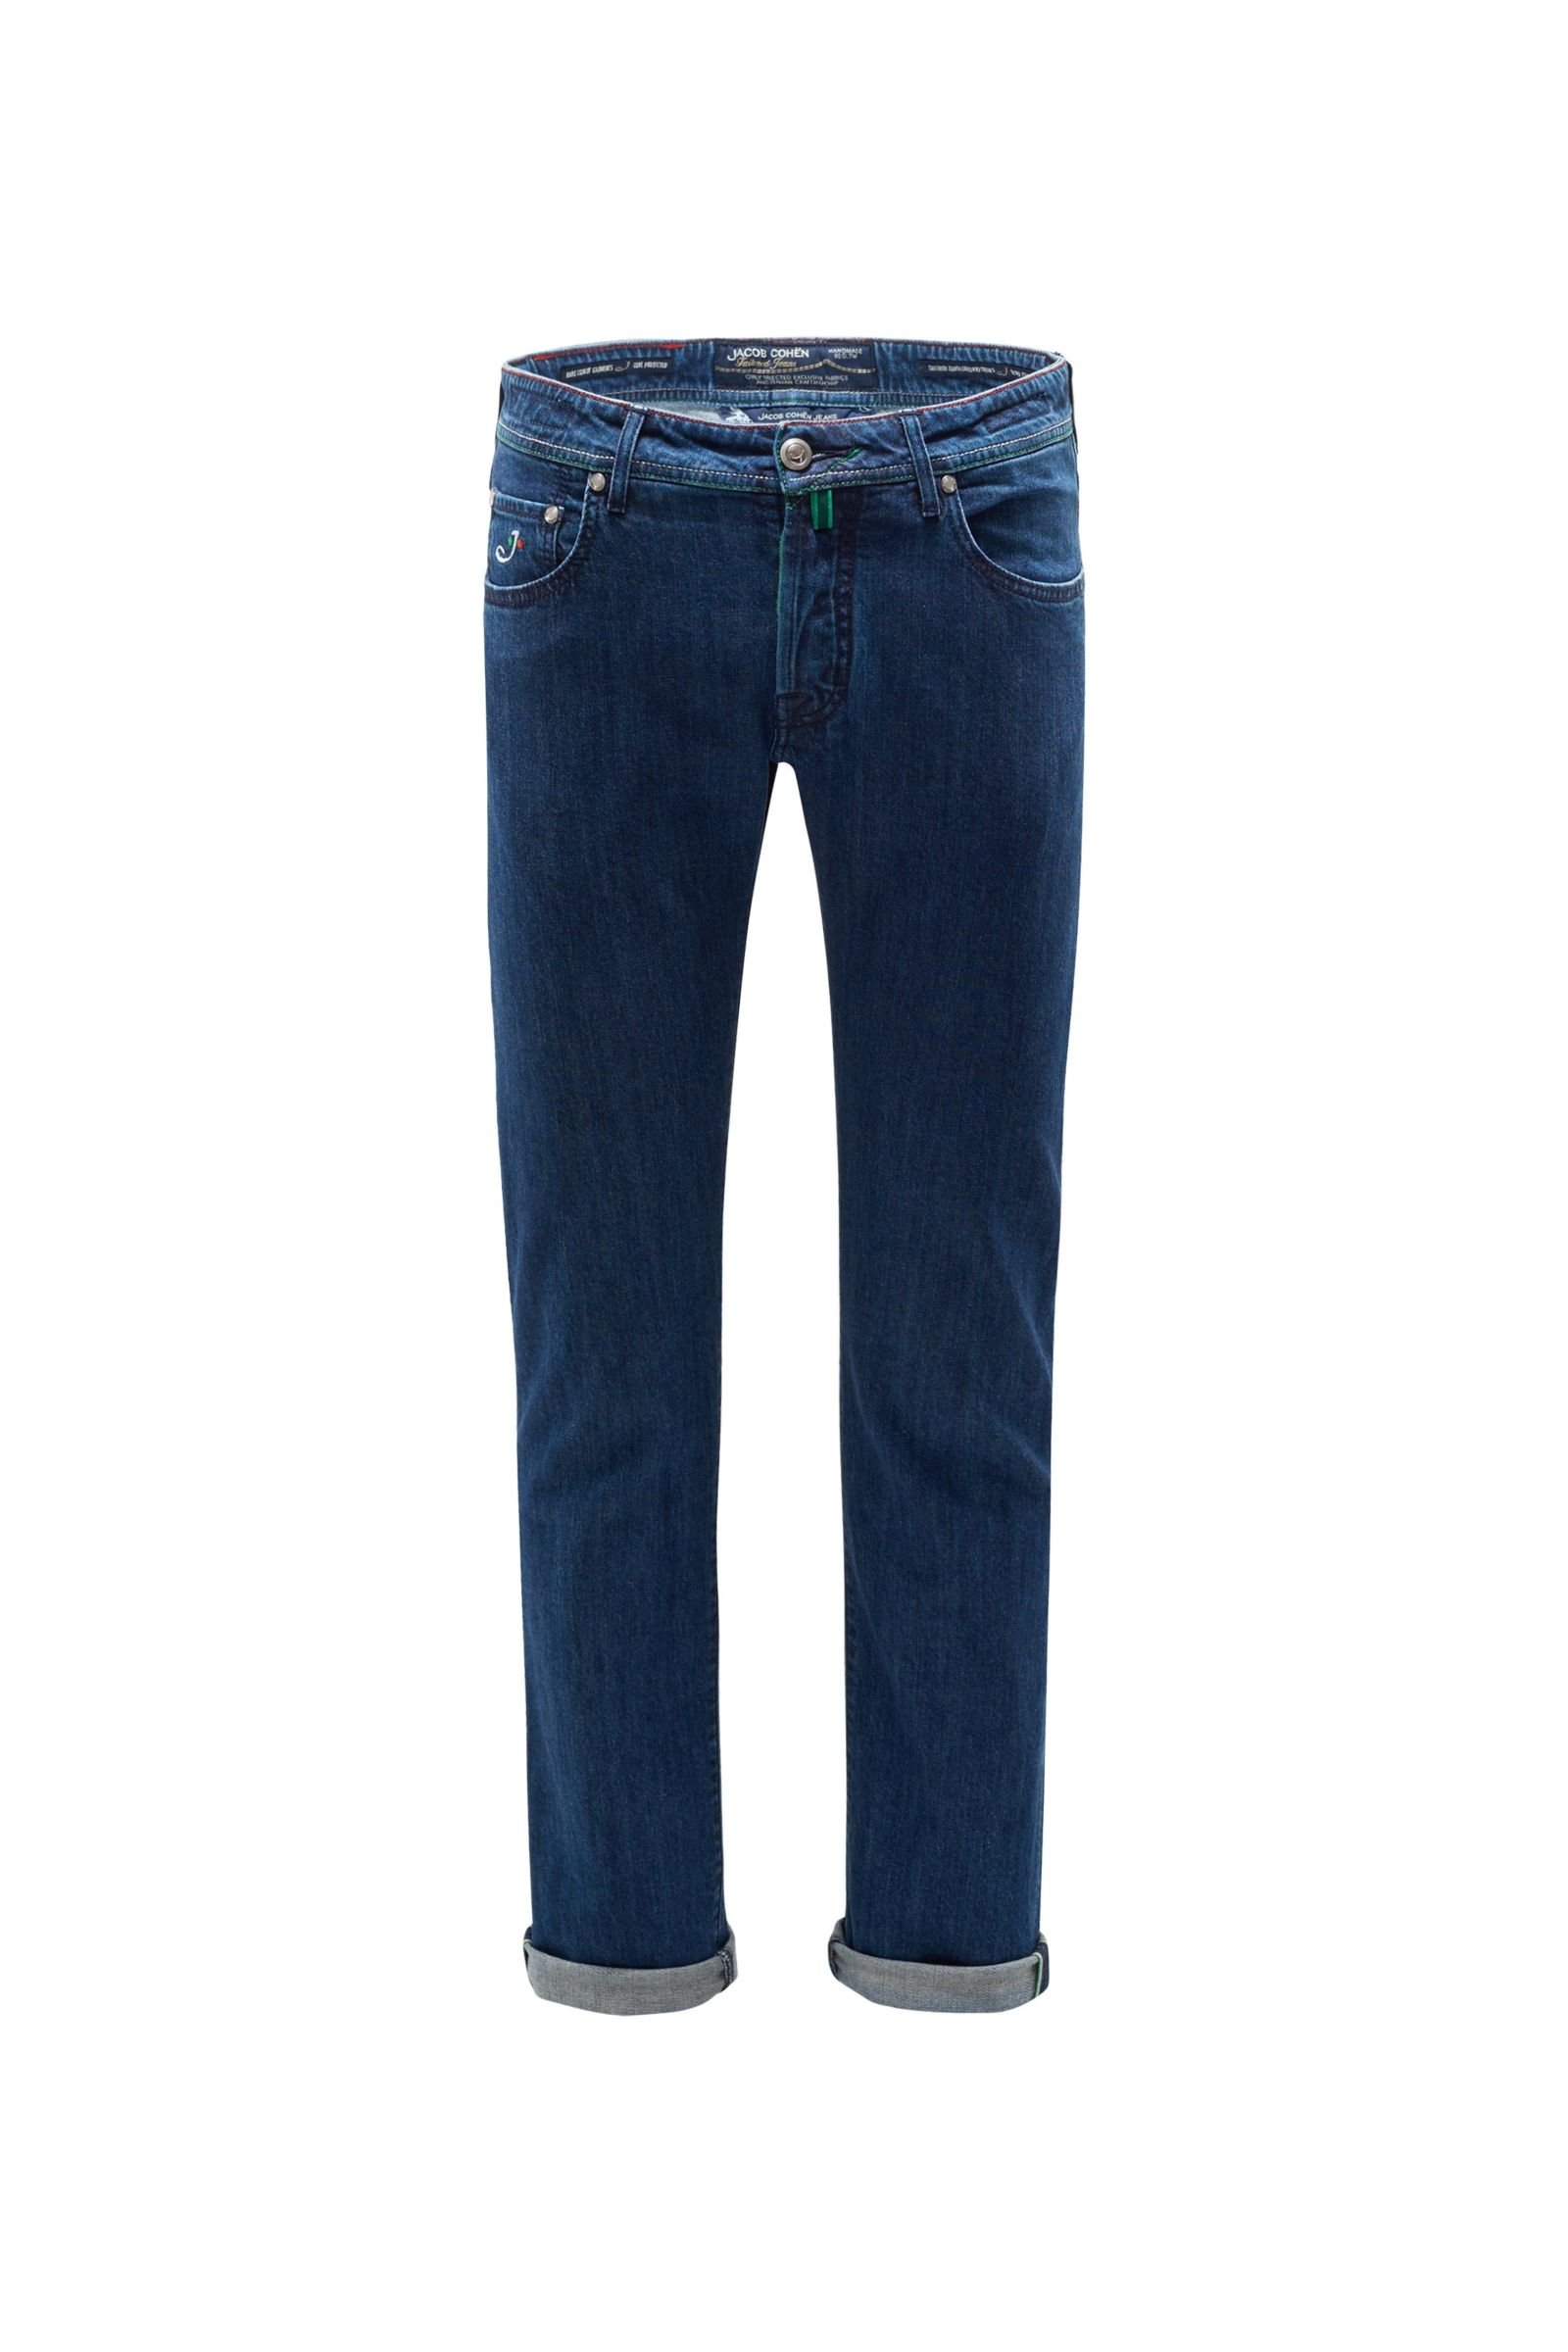 Jeans 'J688 Limited Comfort Slim Fit' dark blue